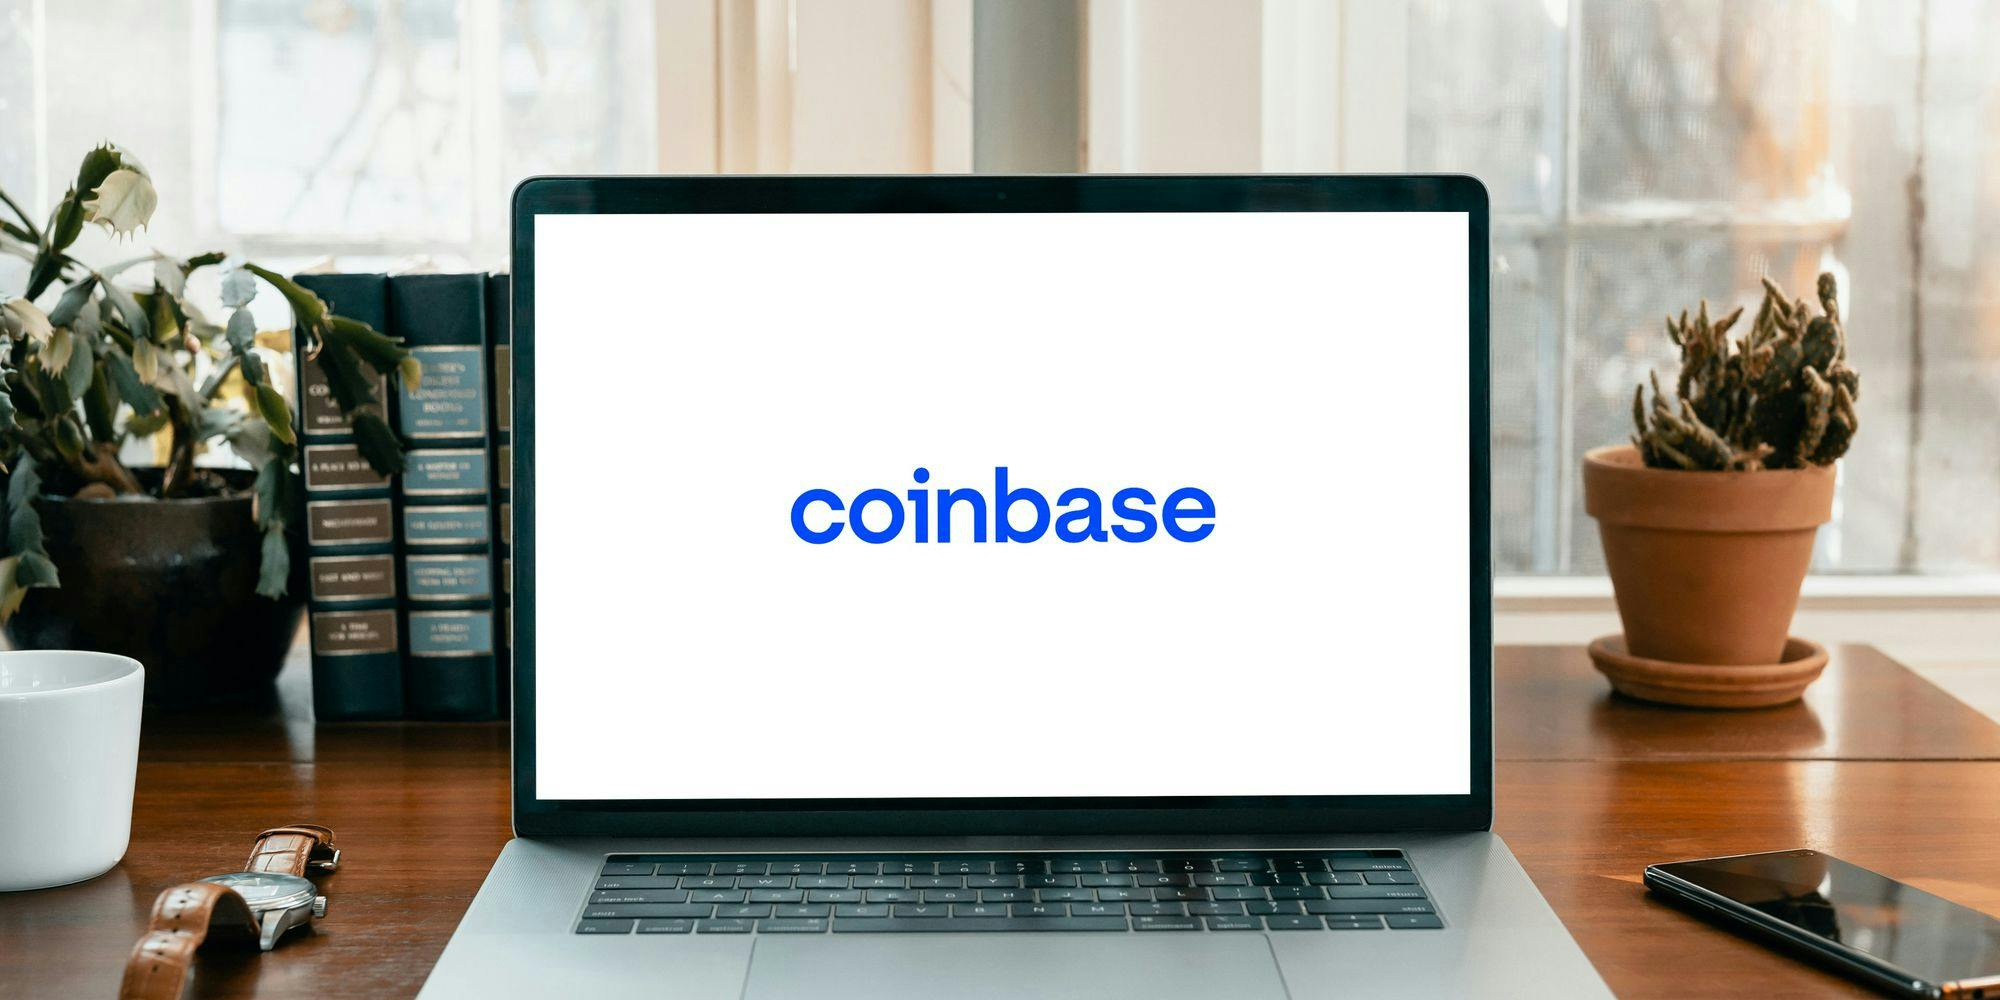 coinbase logo on a laptop